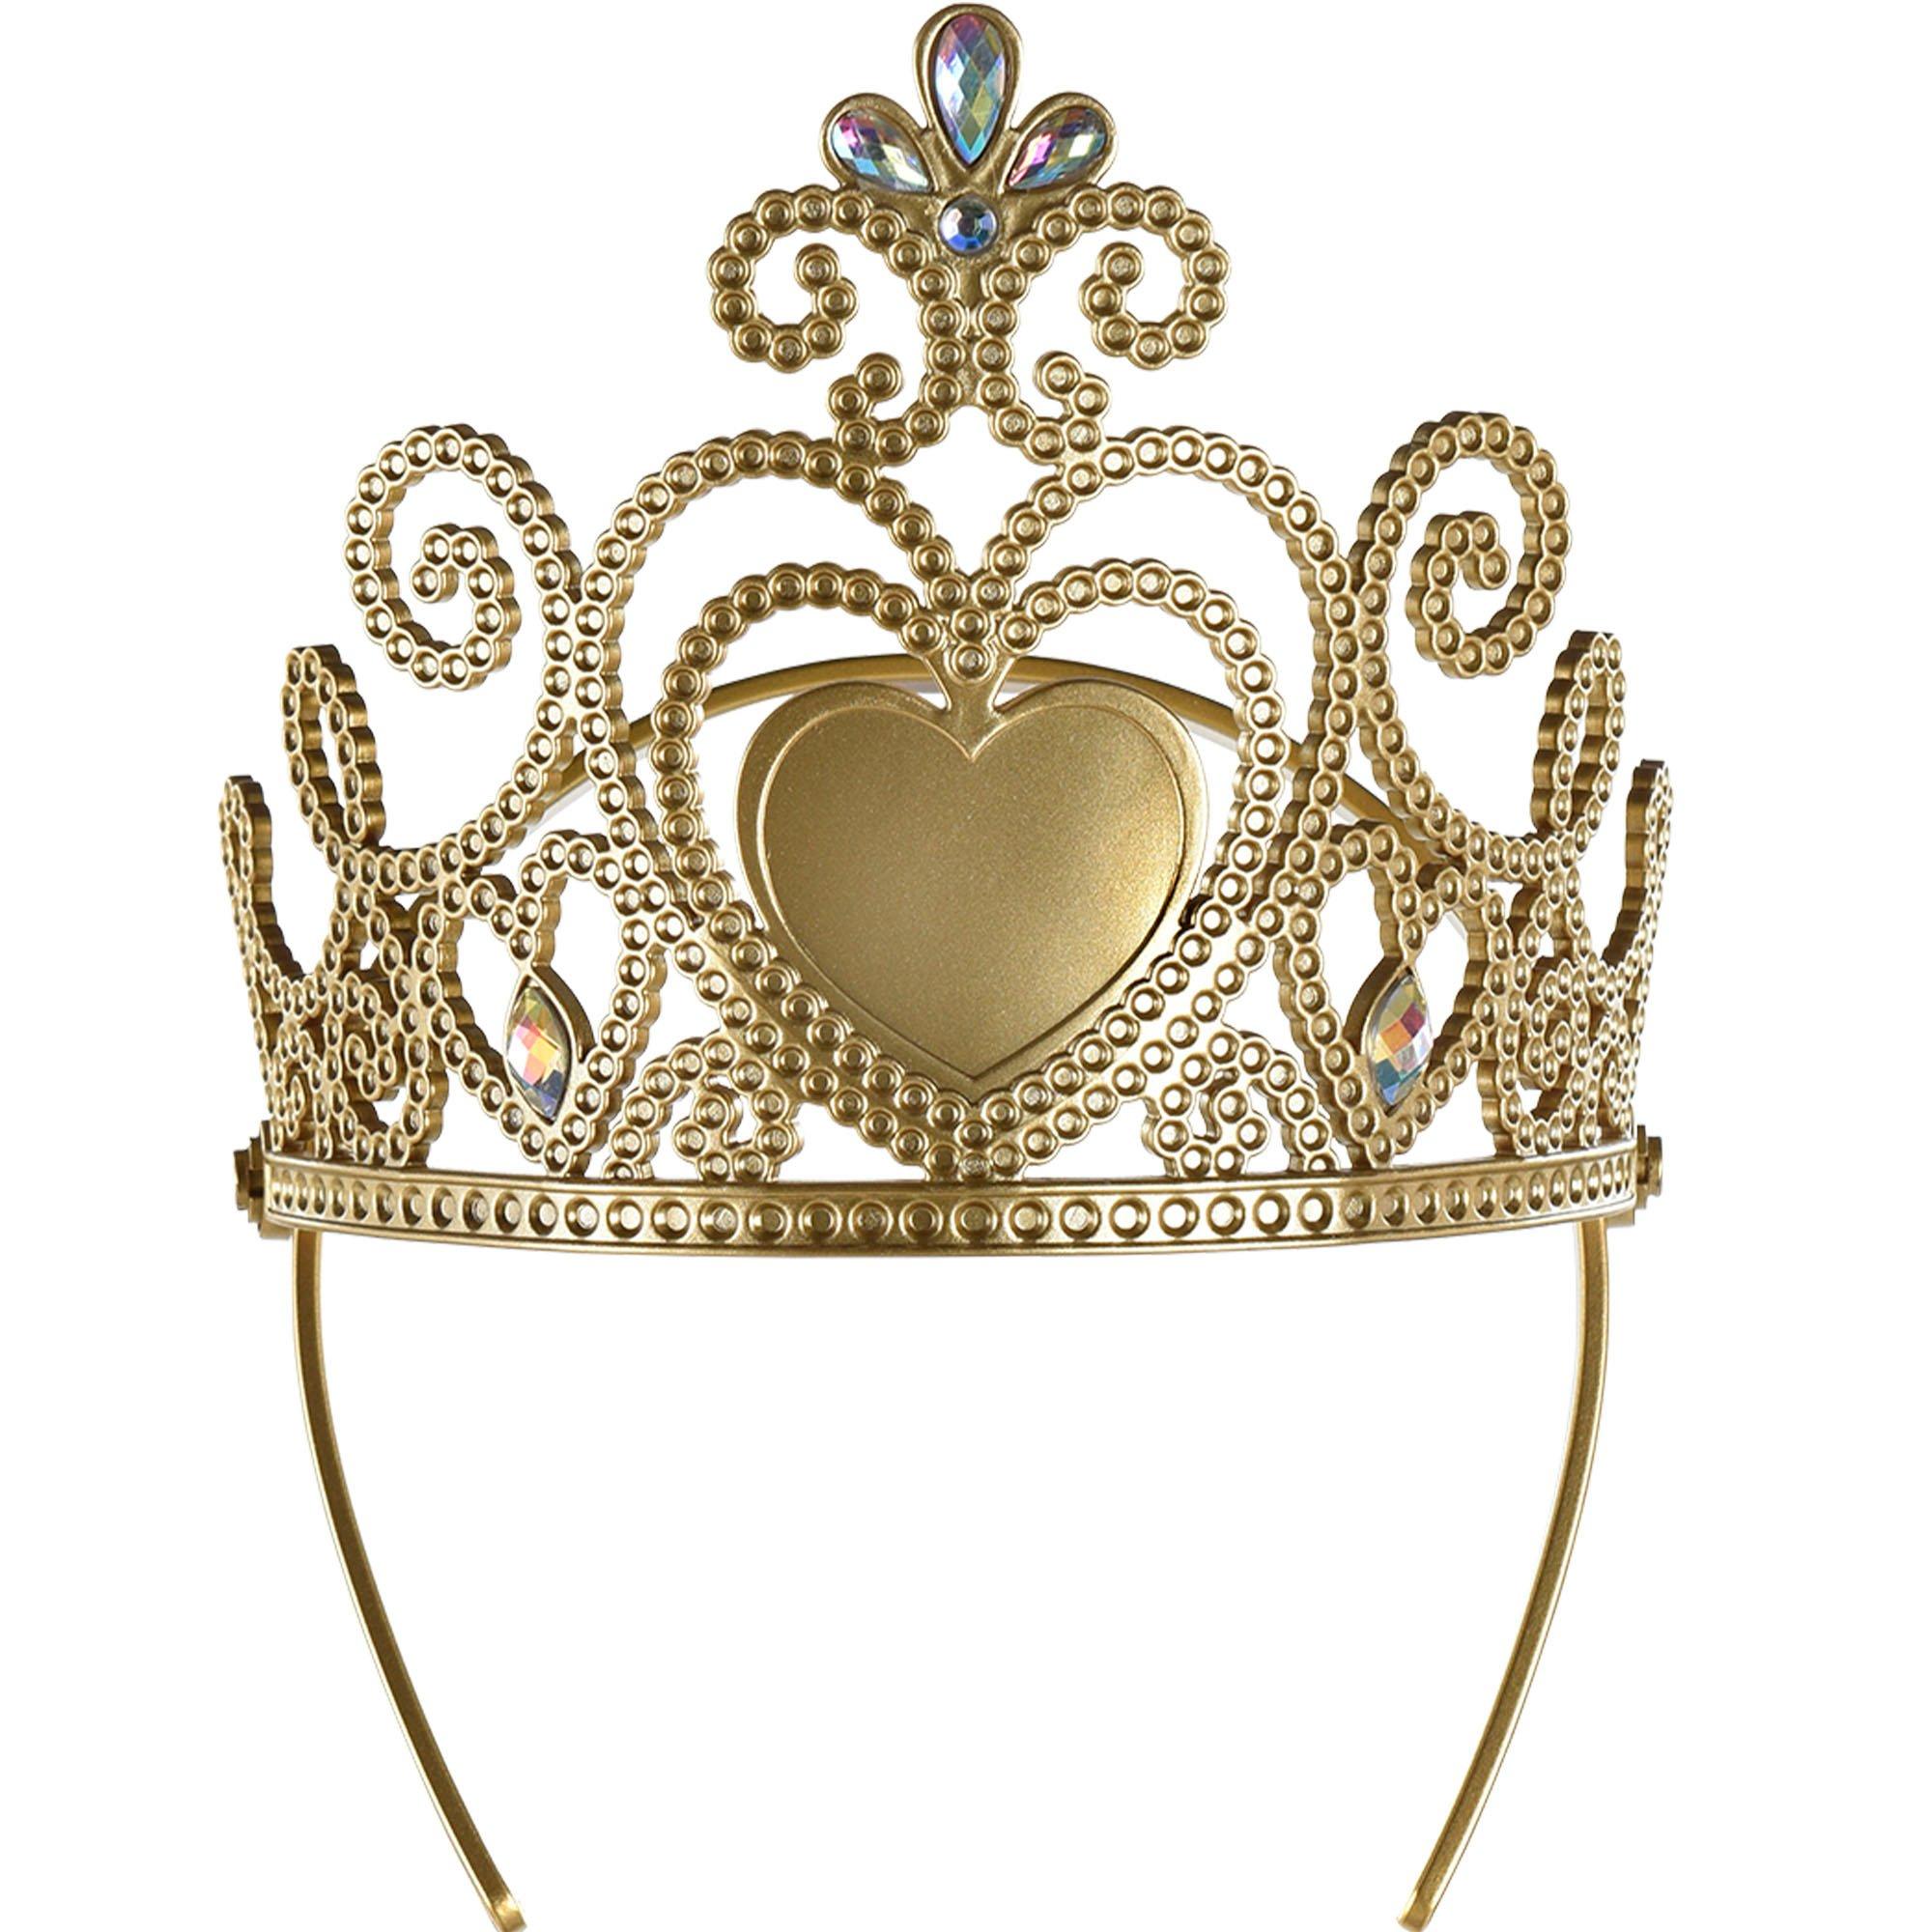 gold princess tiara